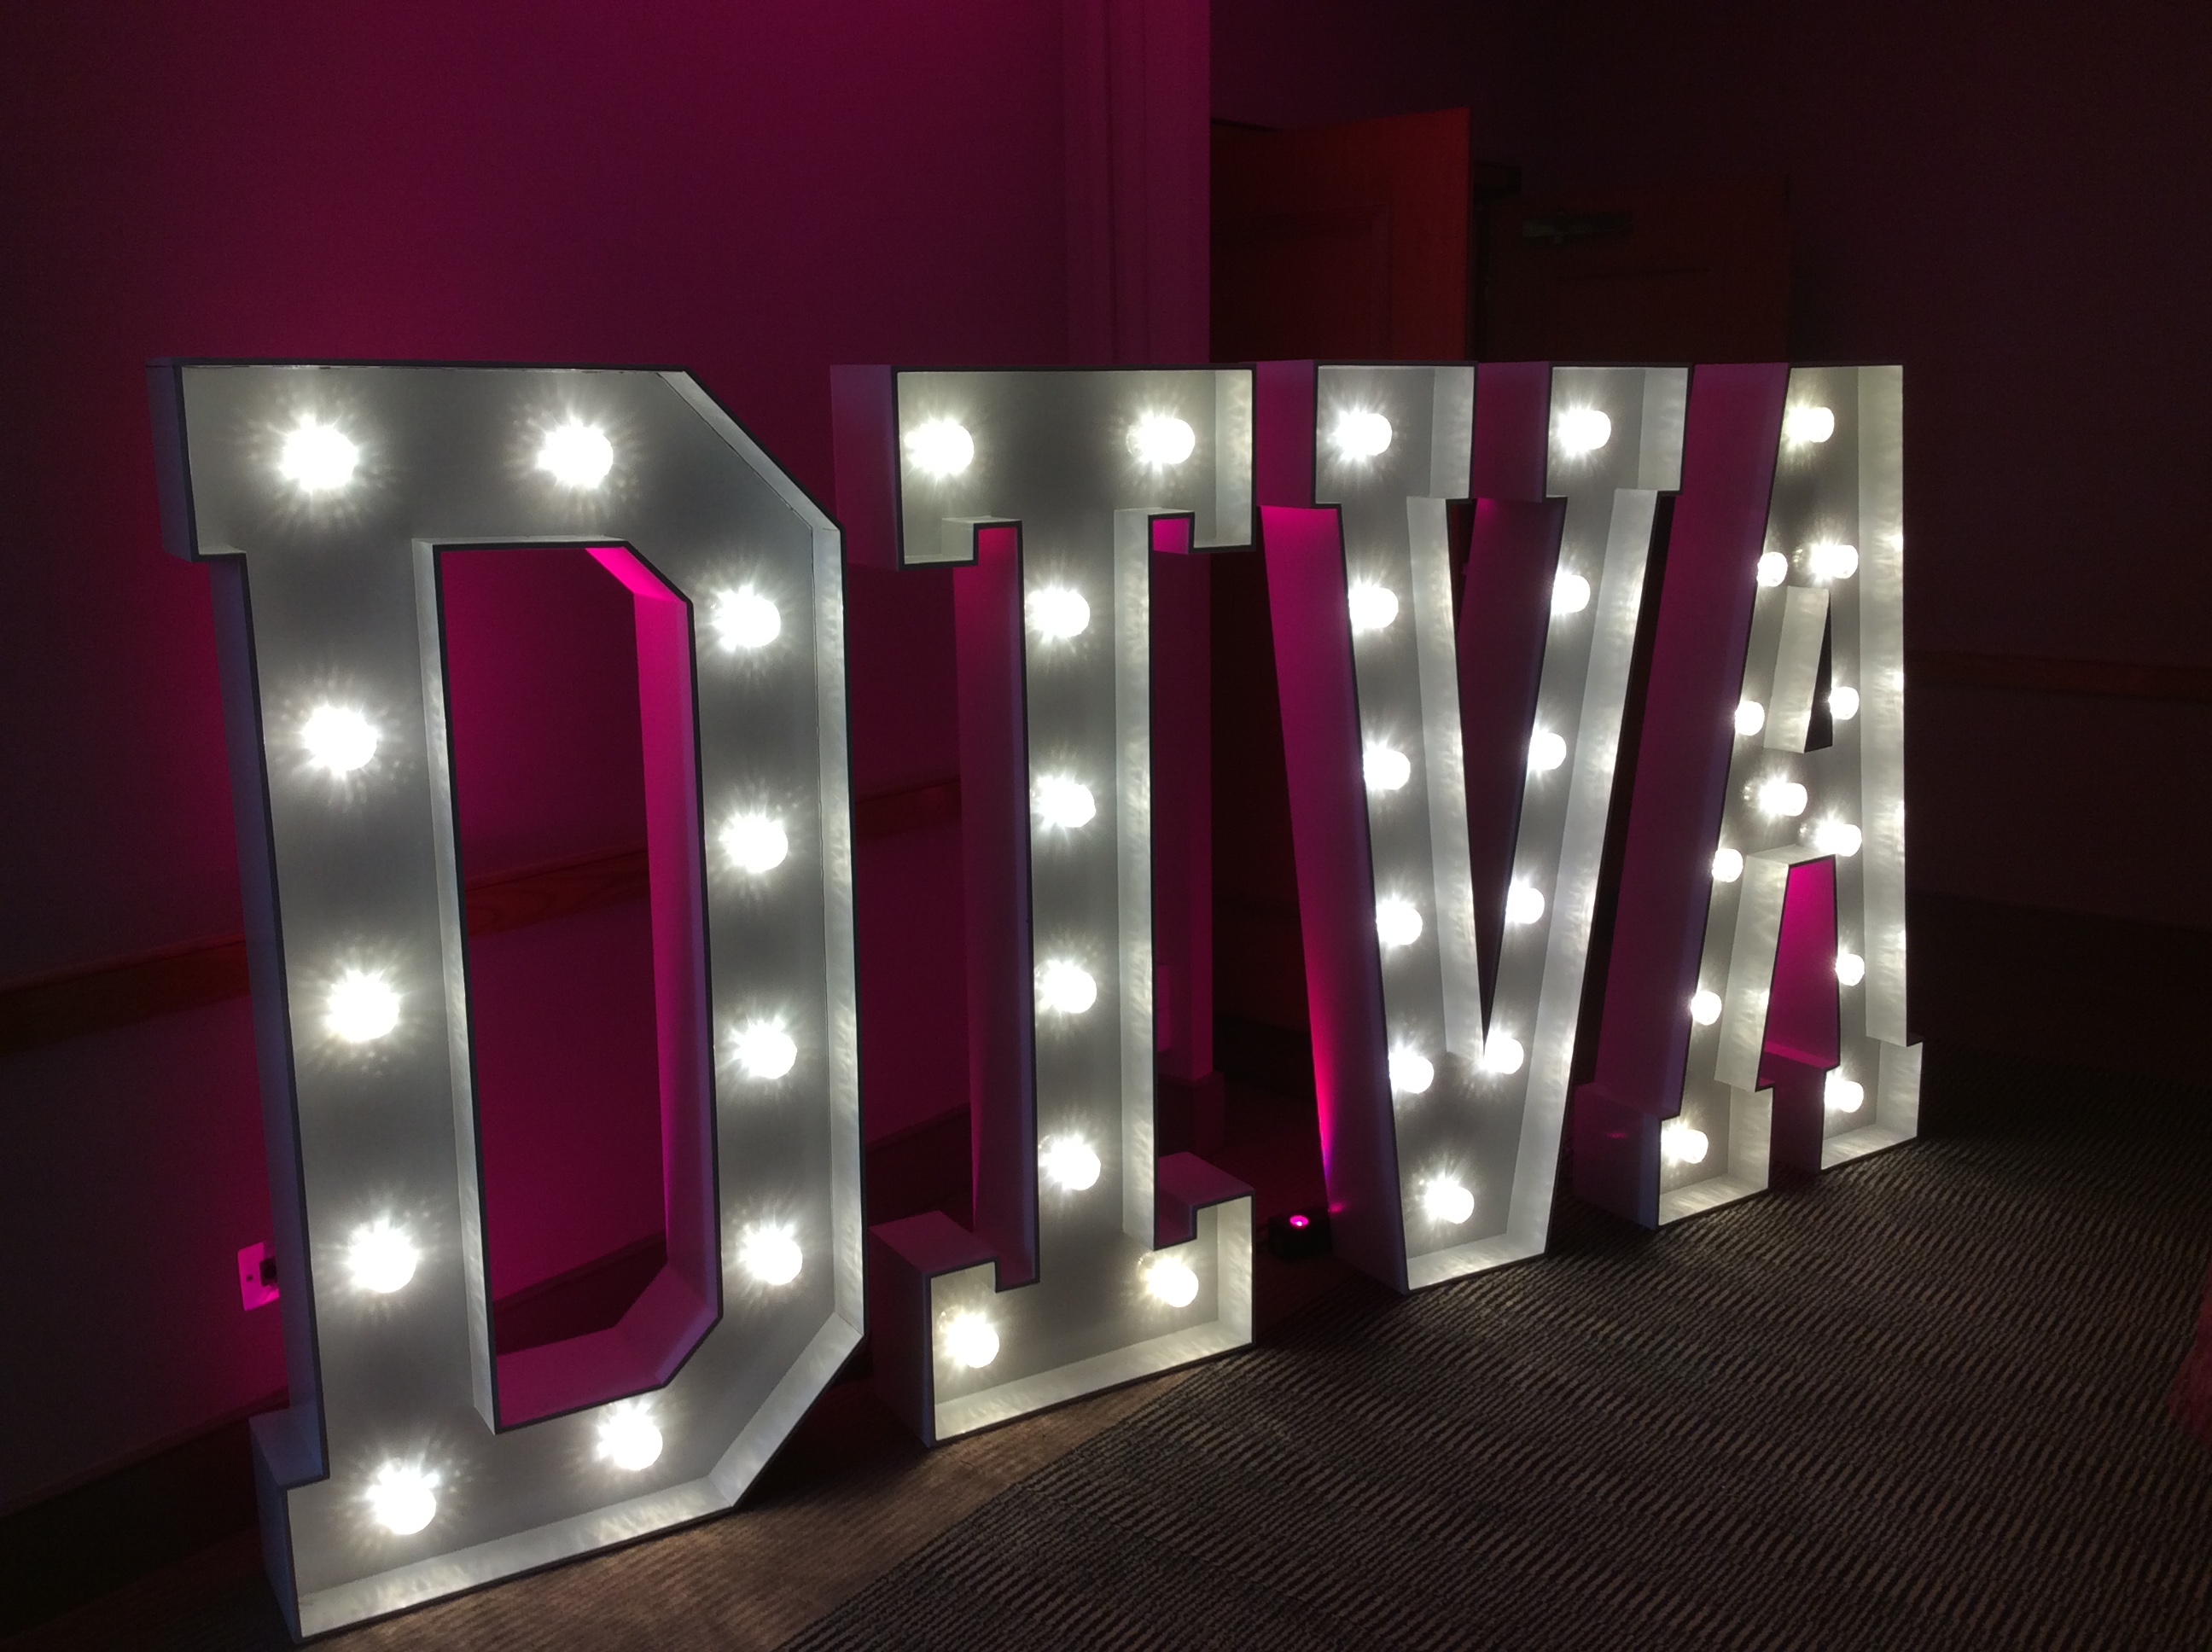 Light Up Letters spelling DIVA